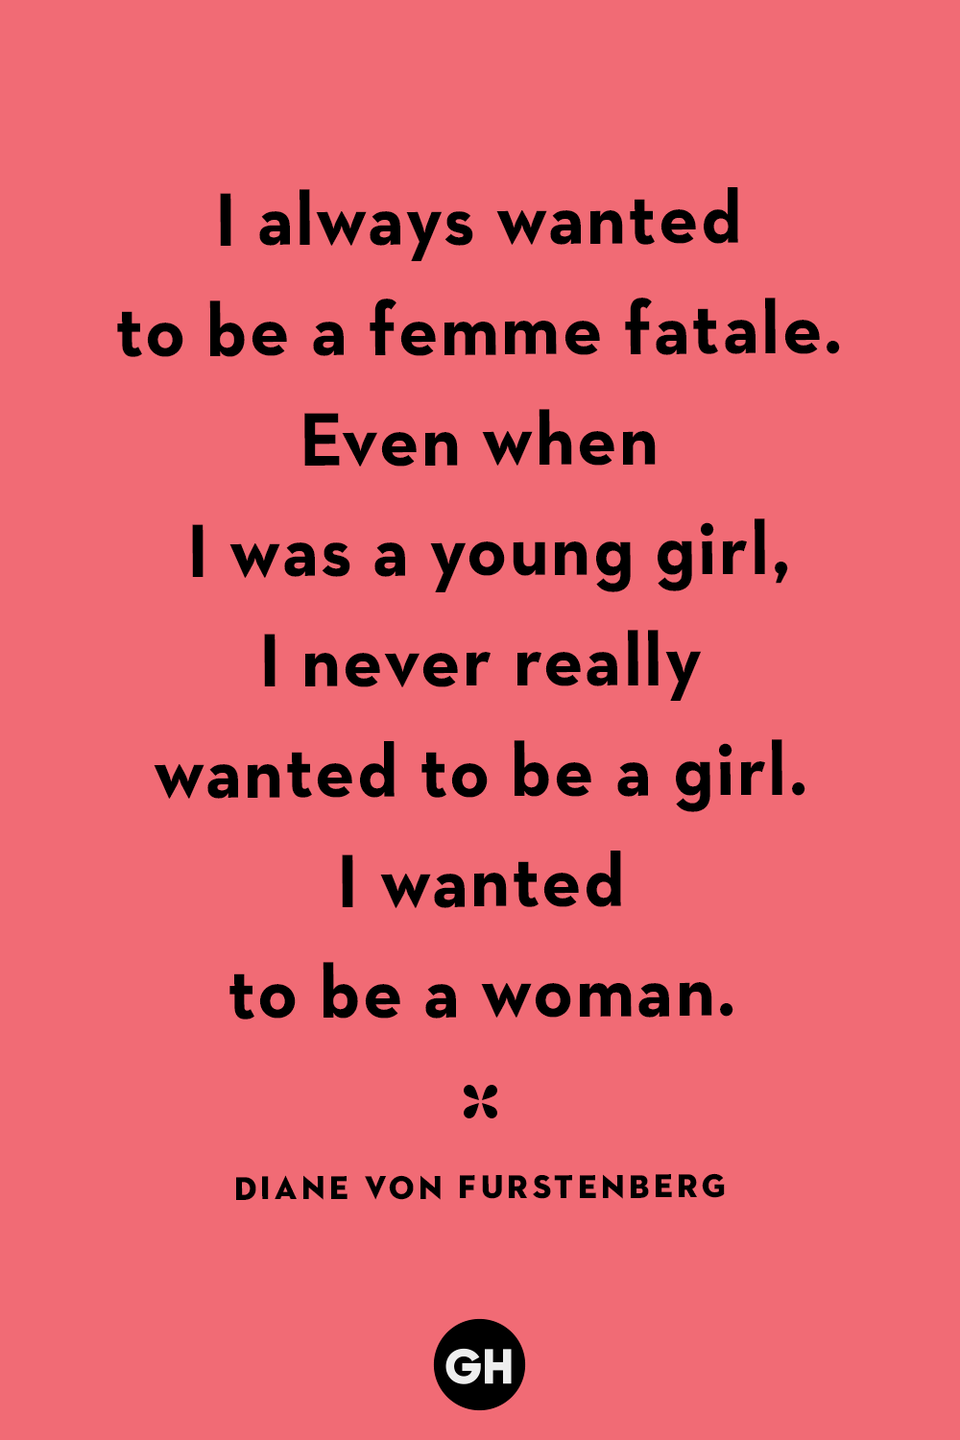 6) Diane Von Furstenberg